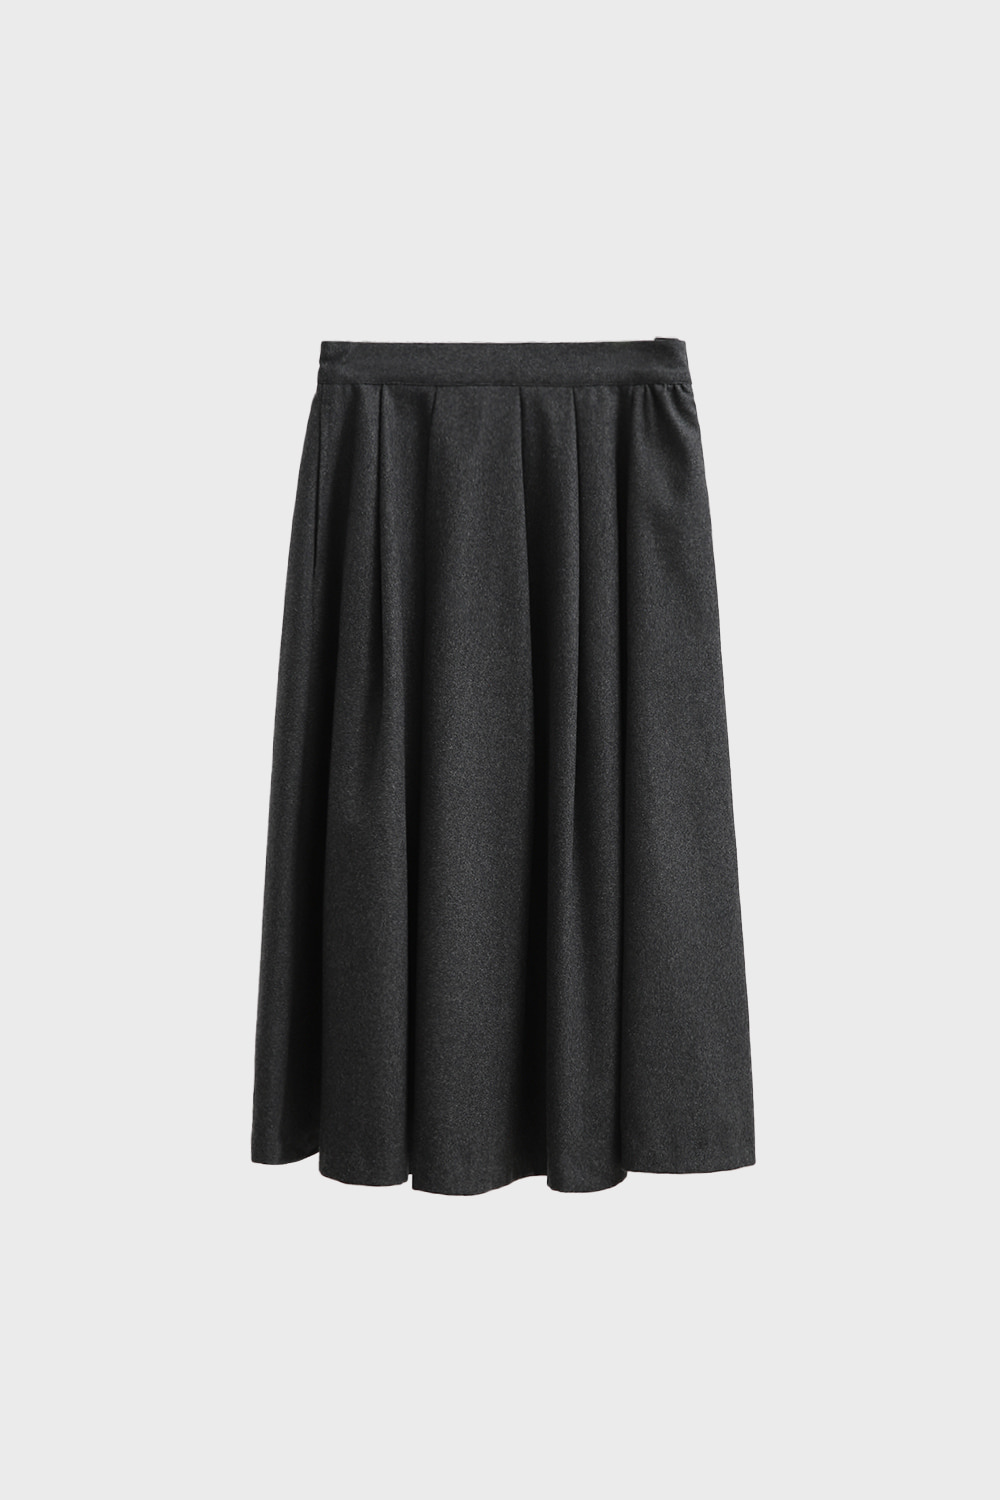 Wool Flared Long Skirt